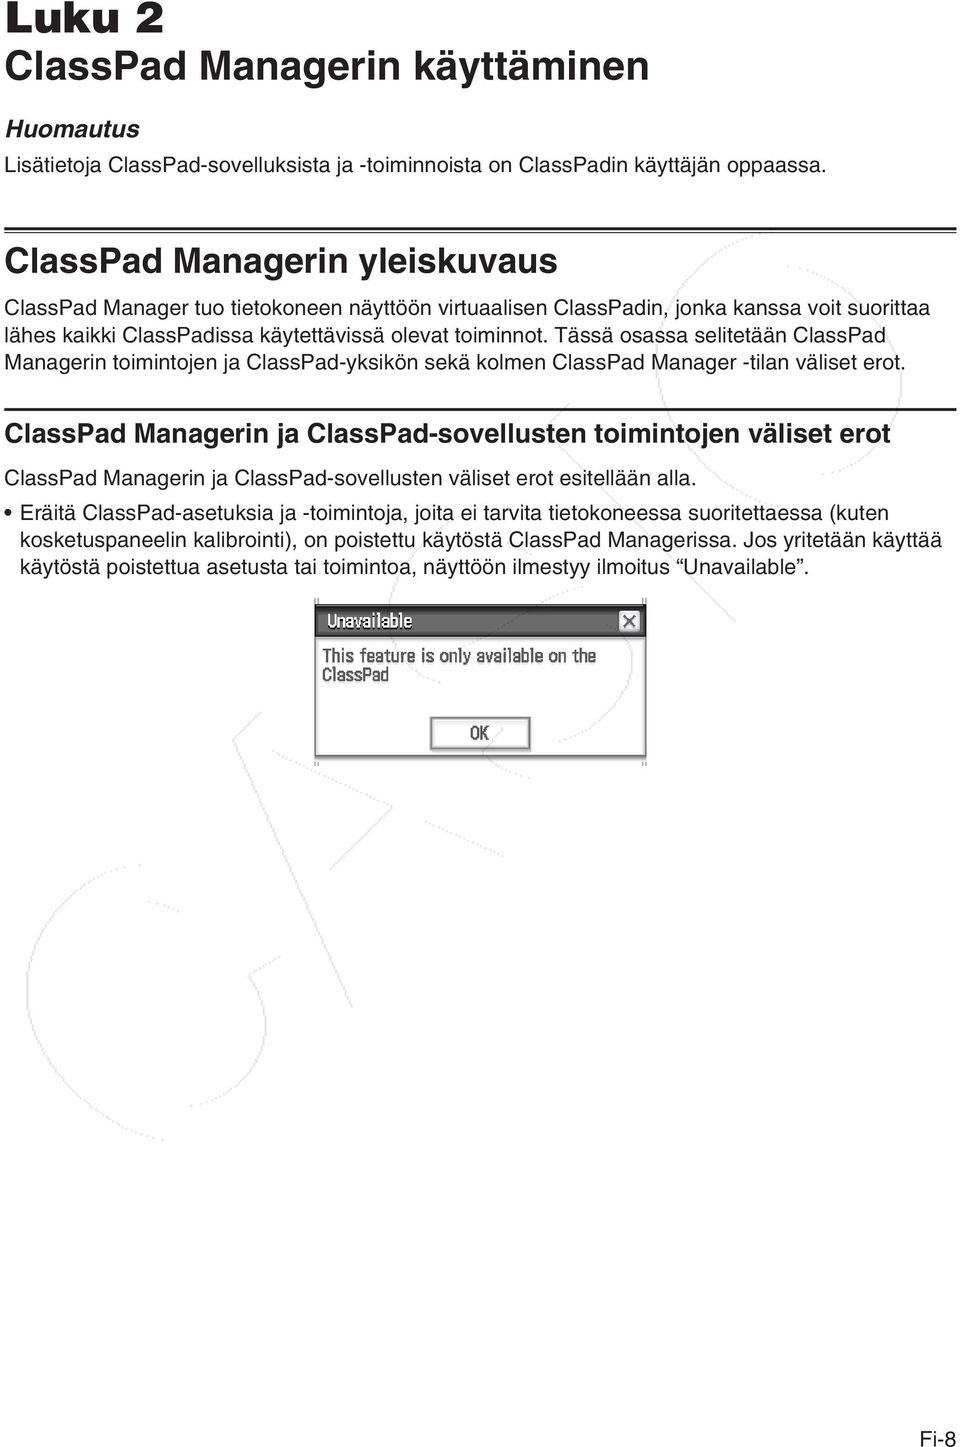 Tässä osassa selitetään ClassPad Managerin toimintojen ja ClassPad-yksikön sekä kolmen ClassPad Manager -tilan väliset erot.